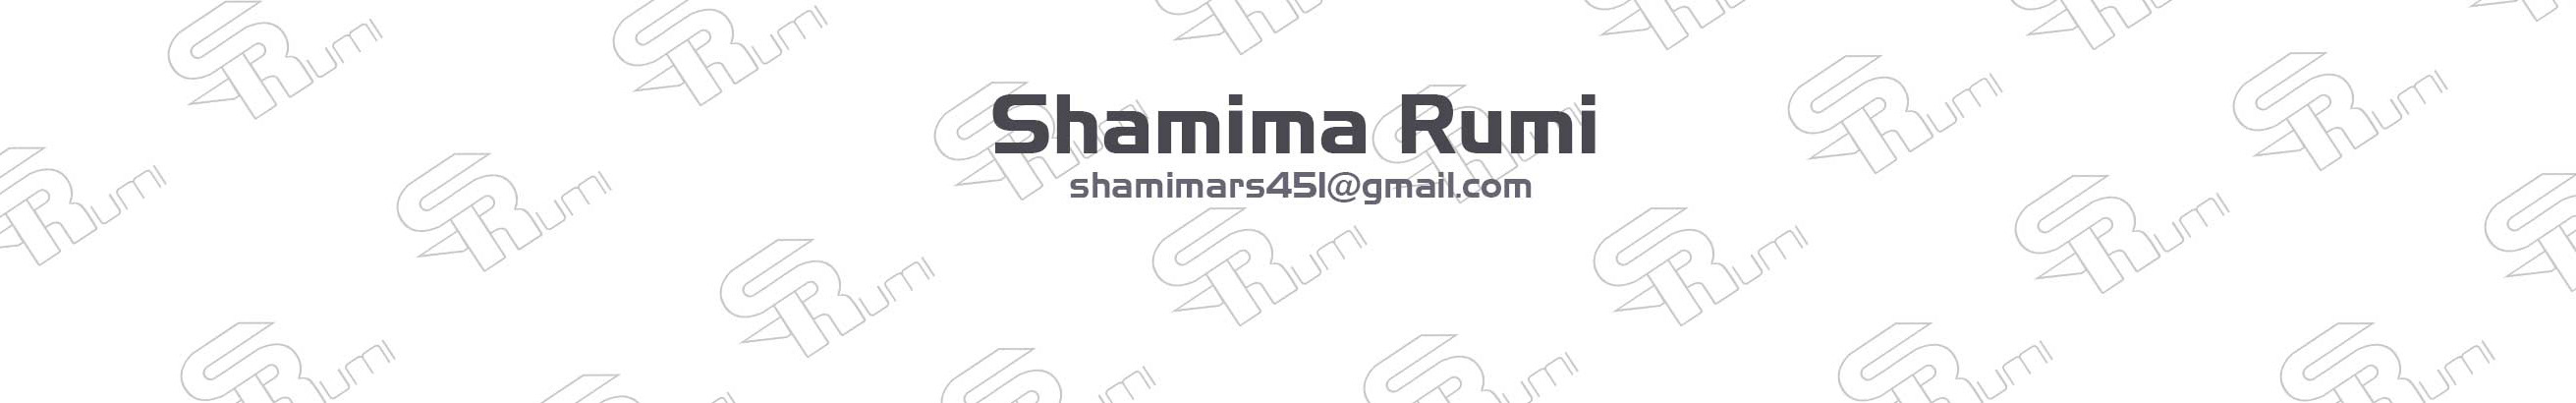 Shamima Rumi's profile banner